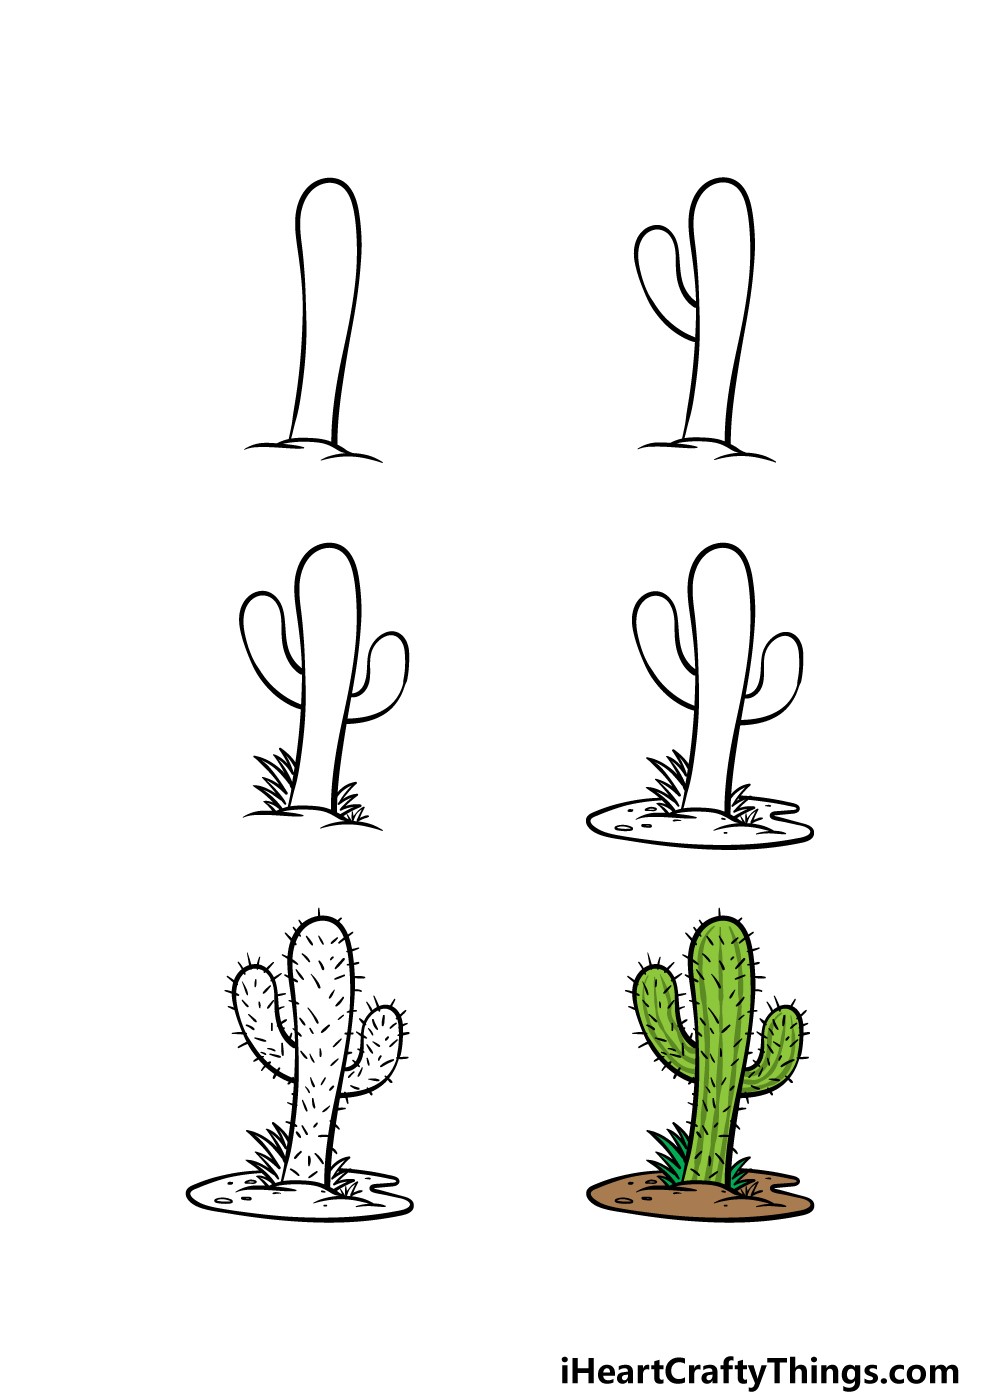 Kaktus-Idee 4 zeichnen ideen